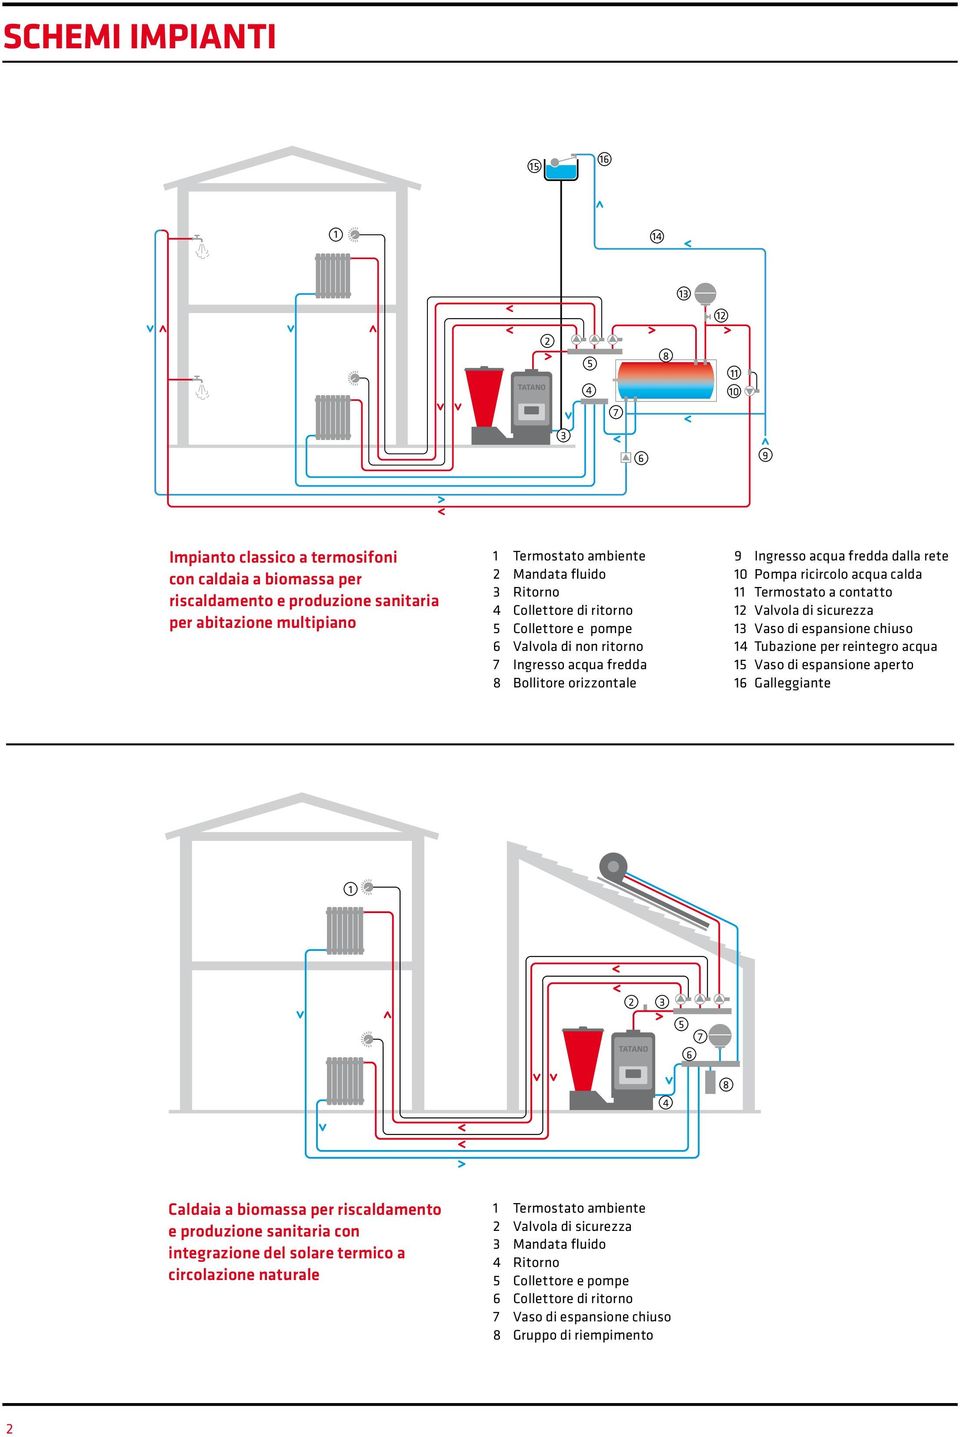 contatto Valvola di sicurezza Vaso di espansione chiuso Tubazione per reintegro acqua Vaso di espansione aperto Galleggiante Caldaia a biomassa per riscaldamento e produzione sanitaria con